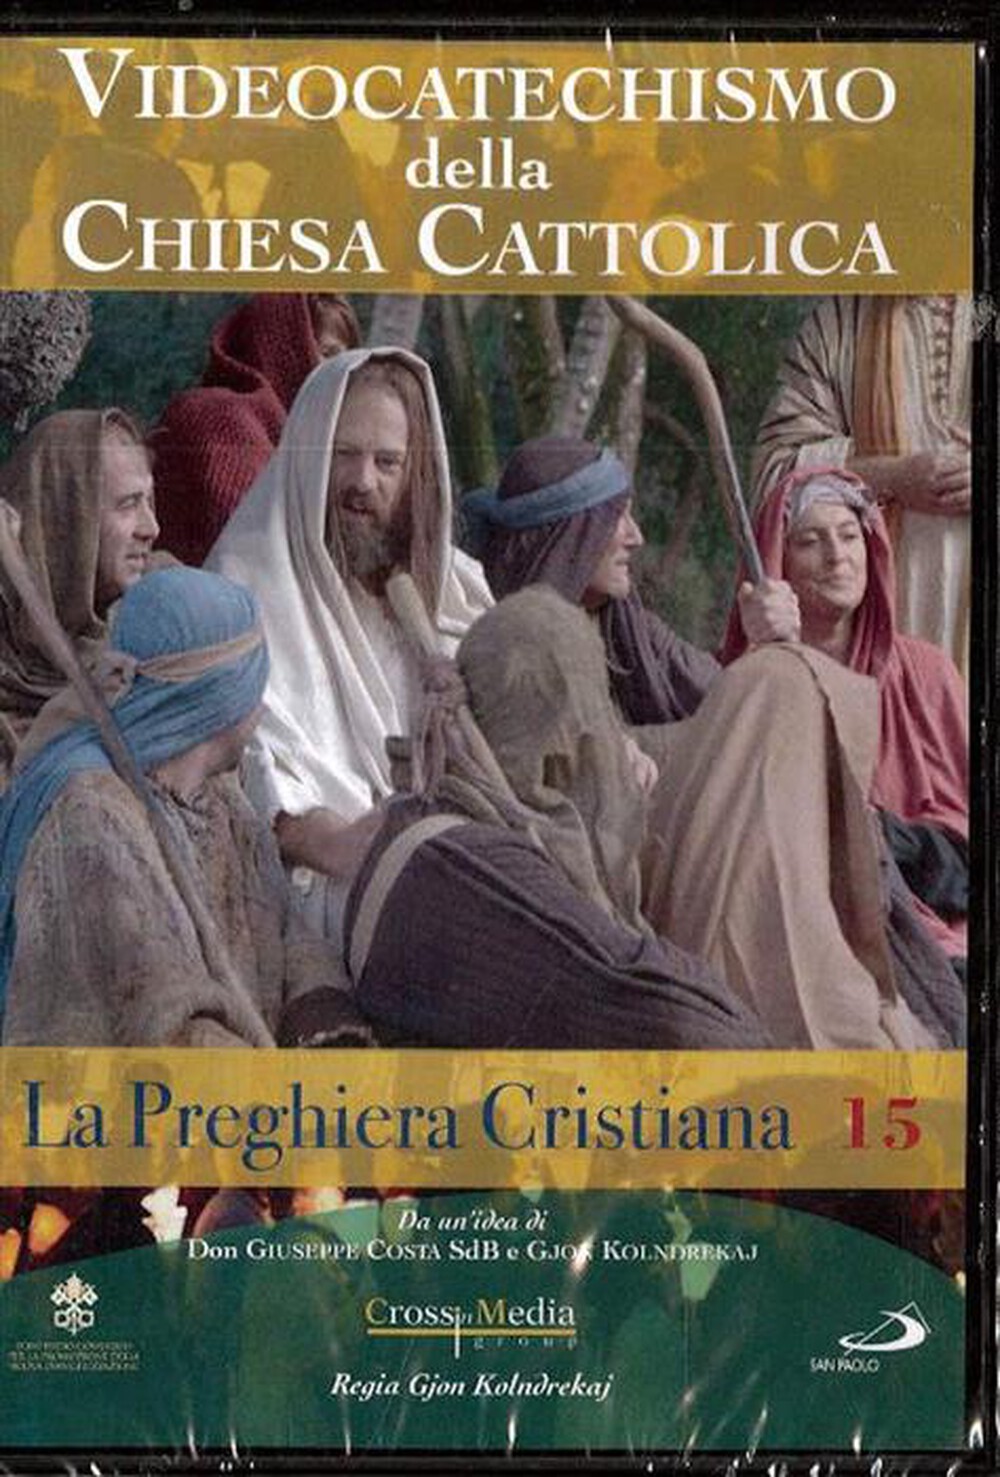 "SAN PAOLO - Videocatechismo #15 - La Preghiera Cristiana #02"